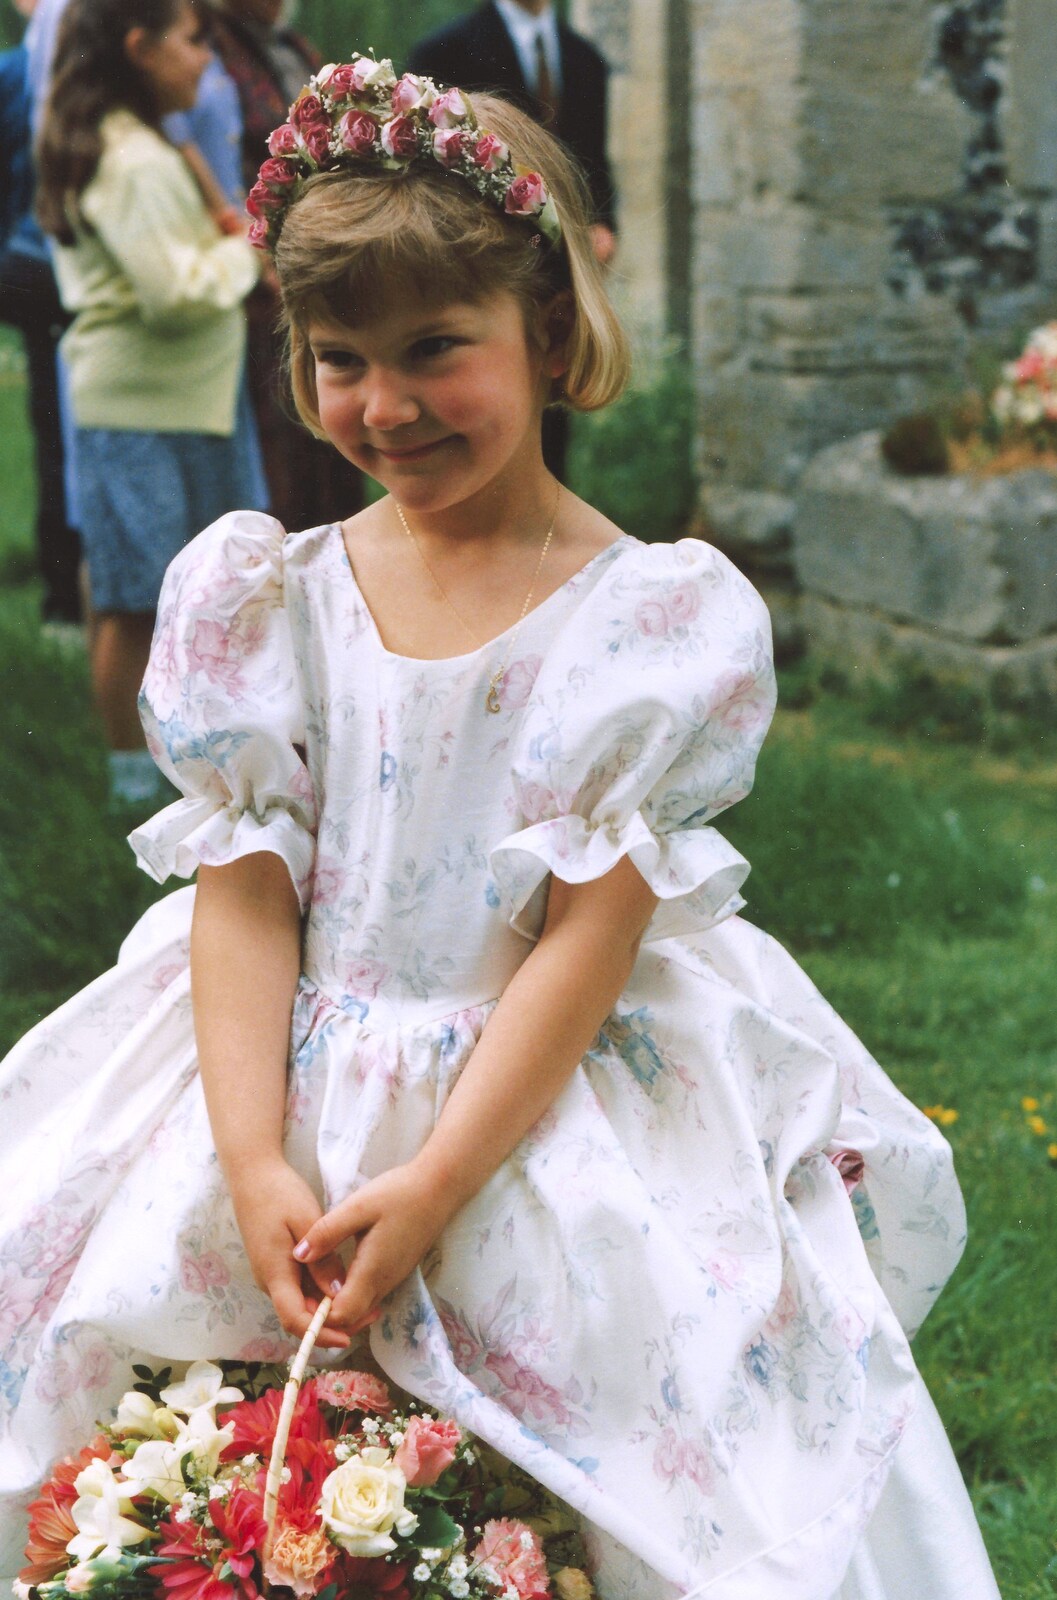 A bashful bridesmaid from Debbie's Wedding, Suffolk - 12th June 1999